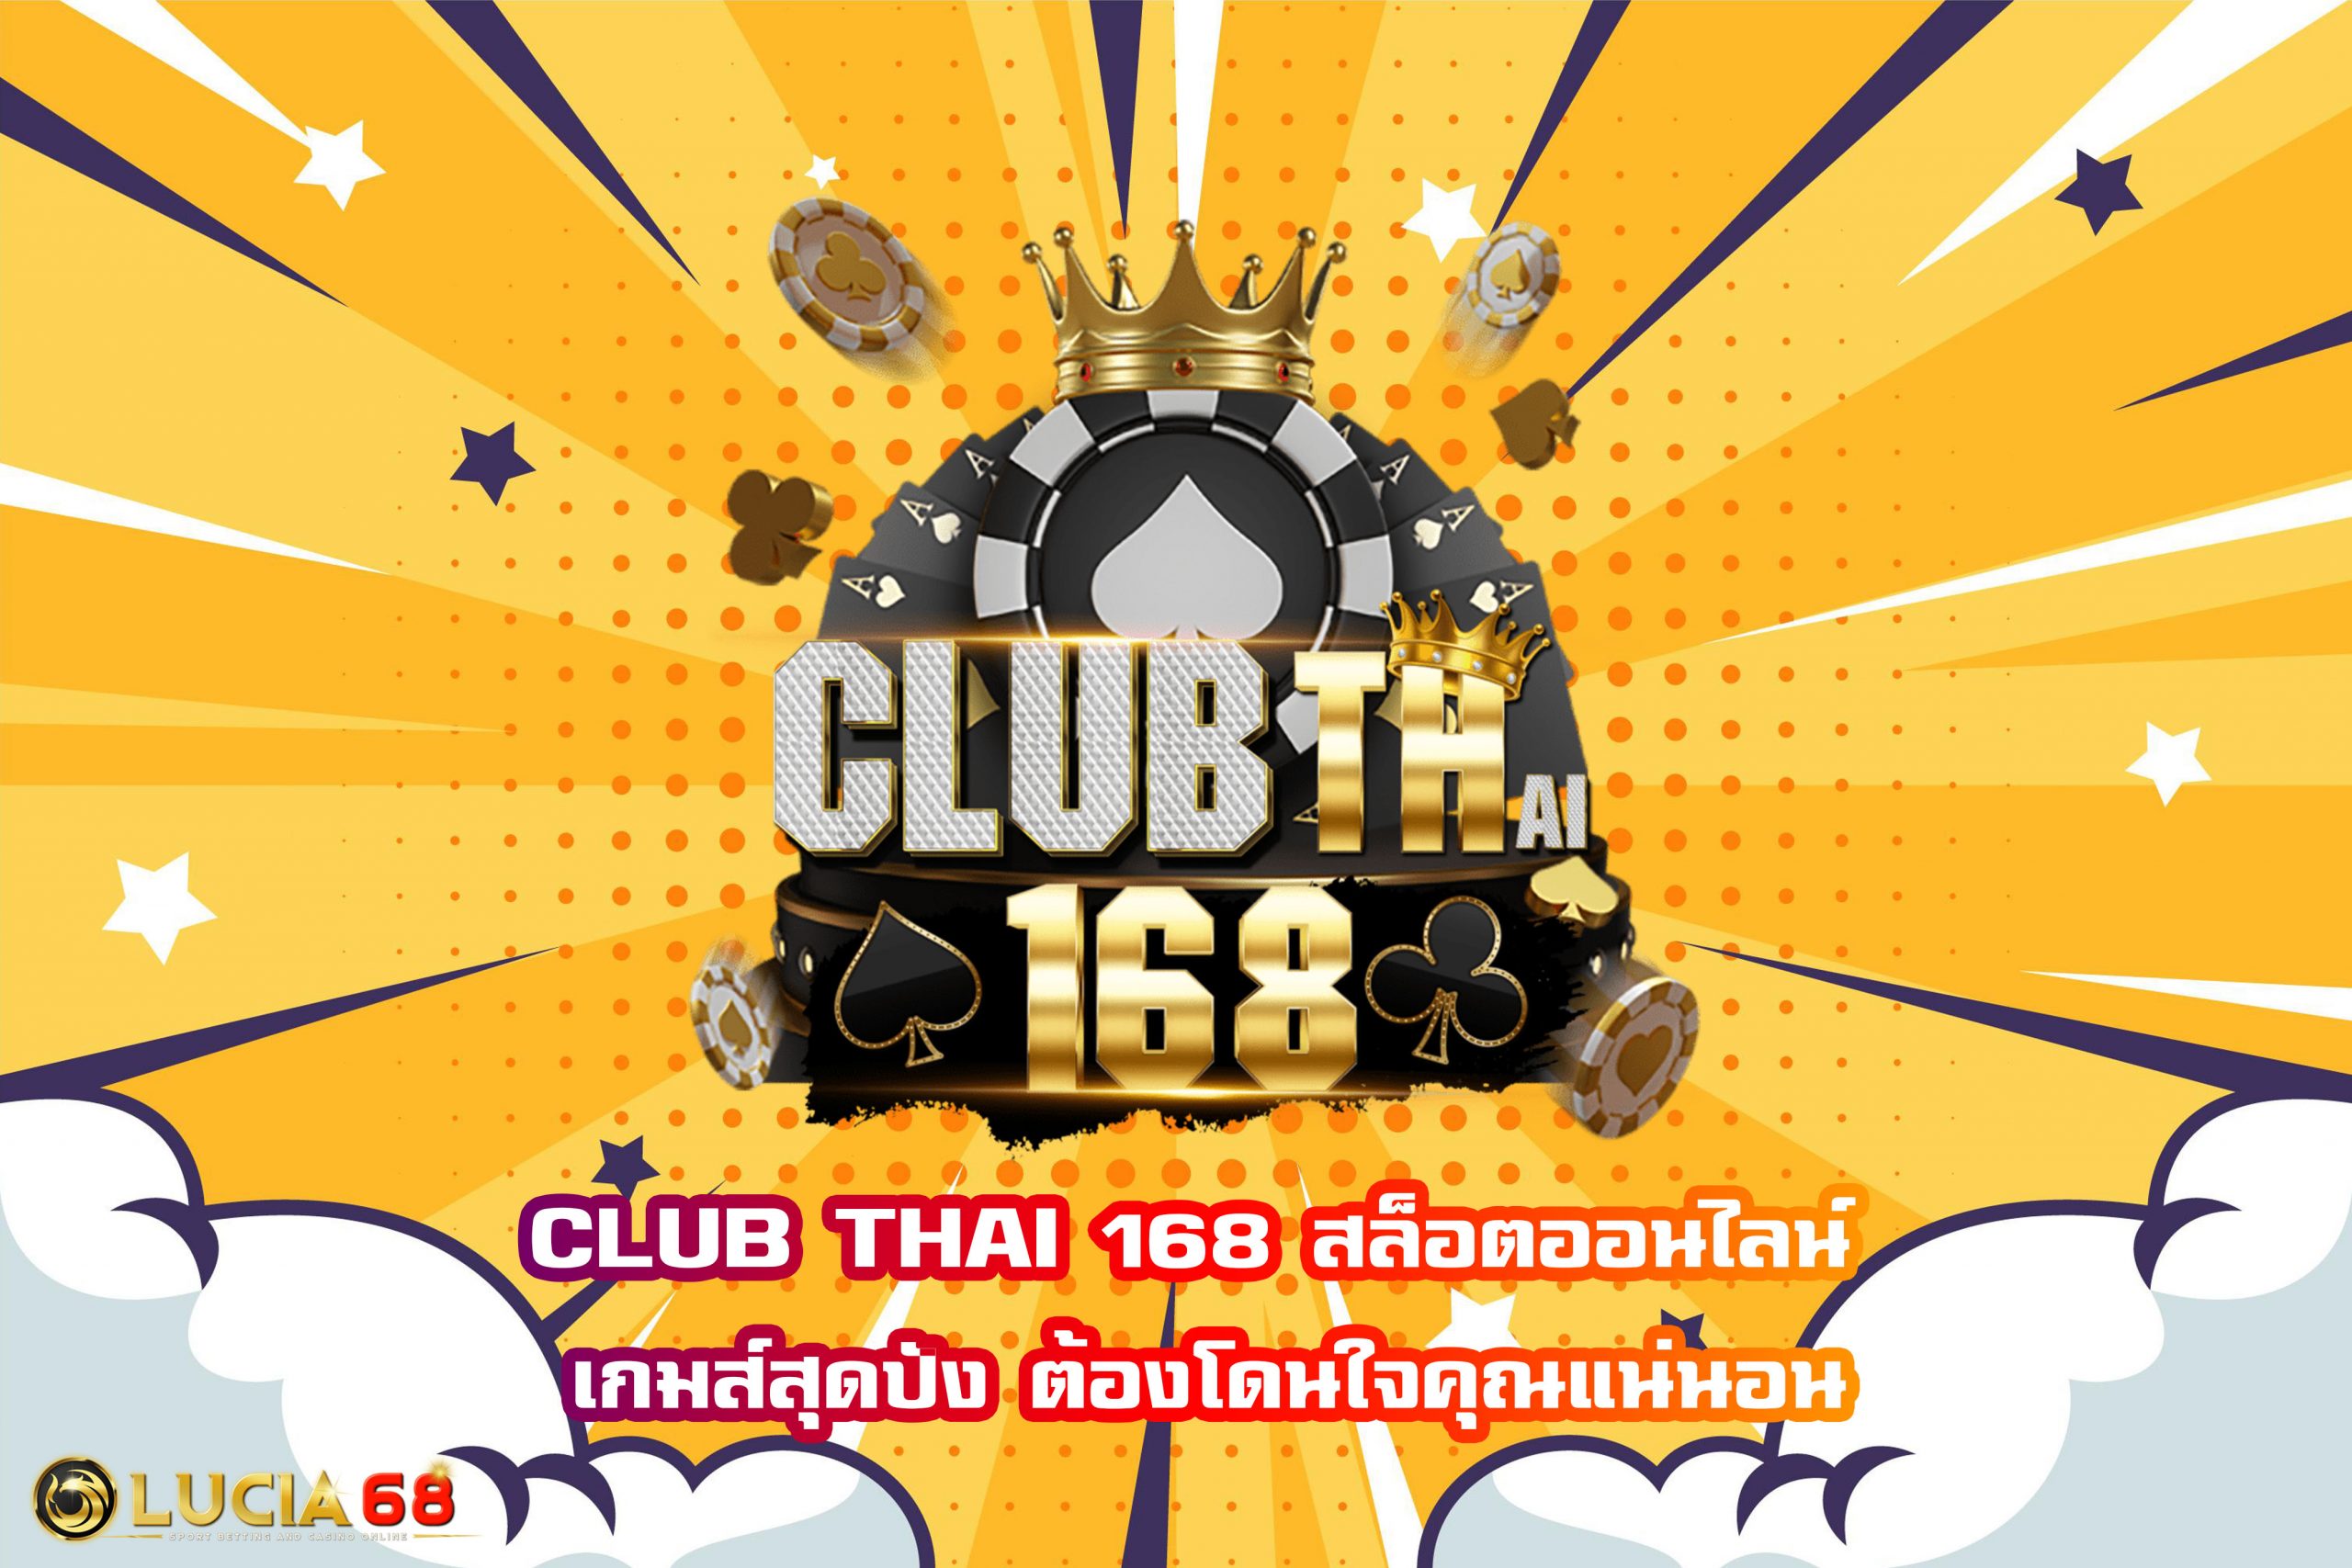 CLUB THAI 168 สล็อตออนไลน์ เกมส์สุดปัง ต้องโดนใจคุณแน่นอน